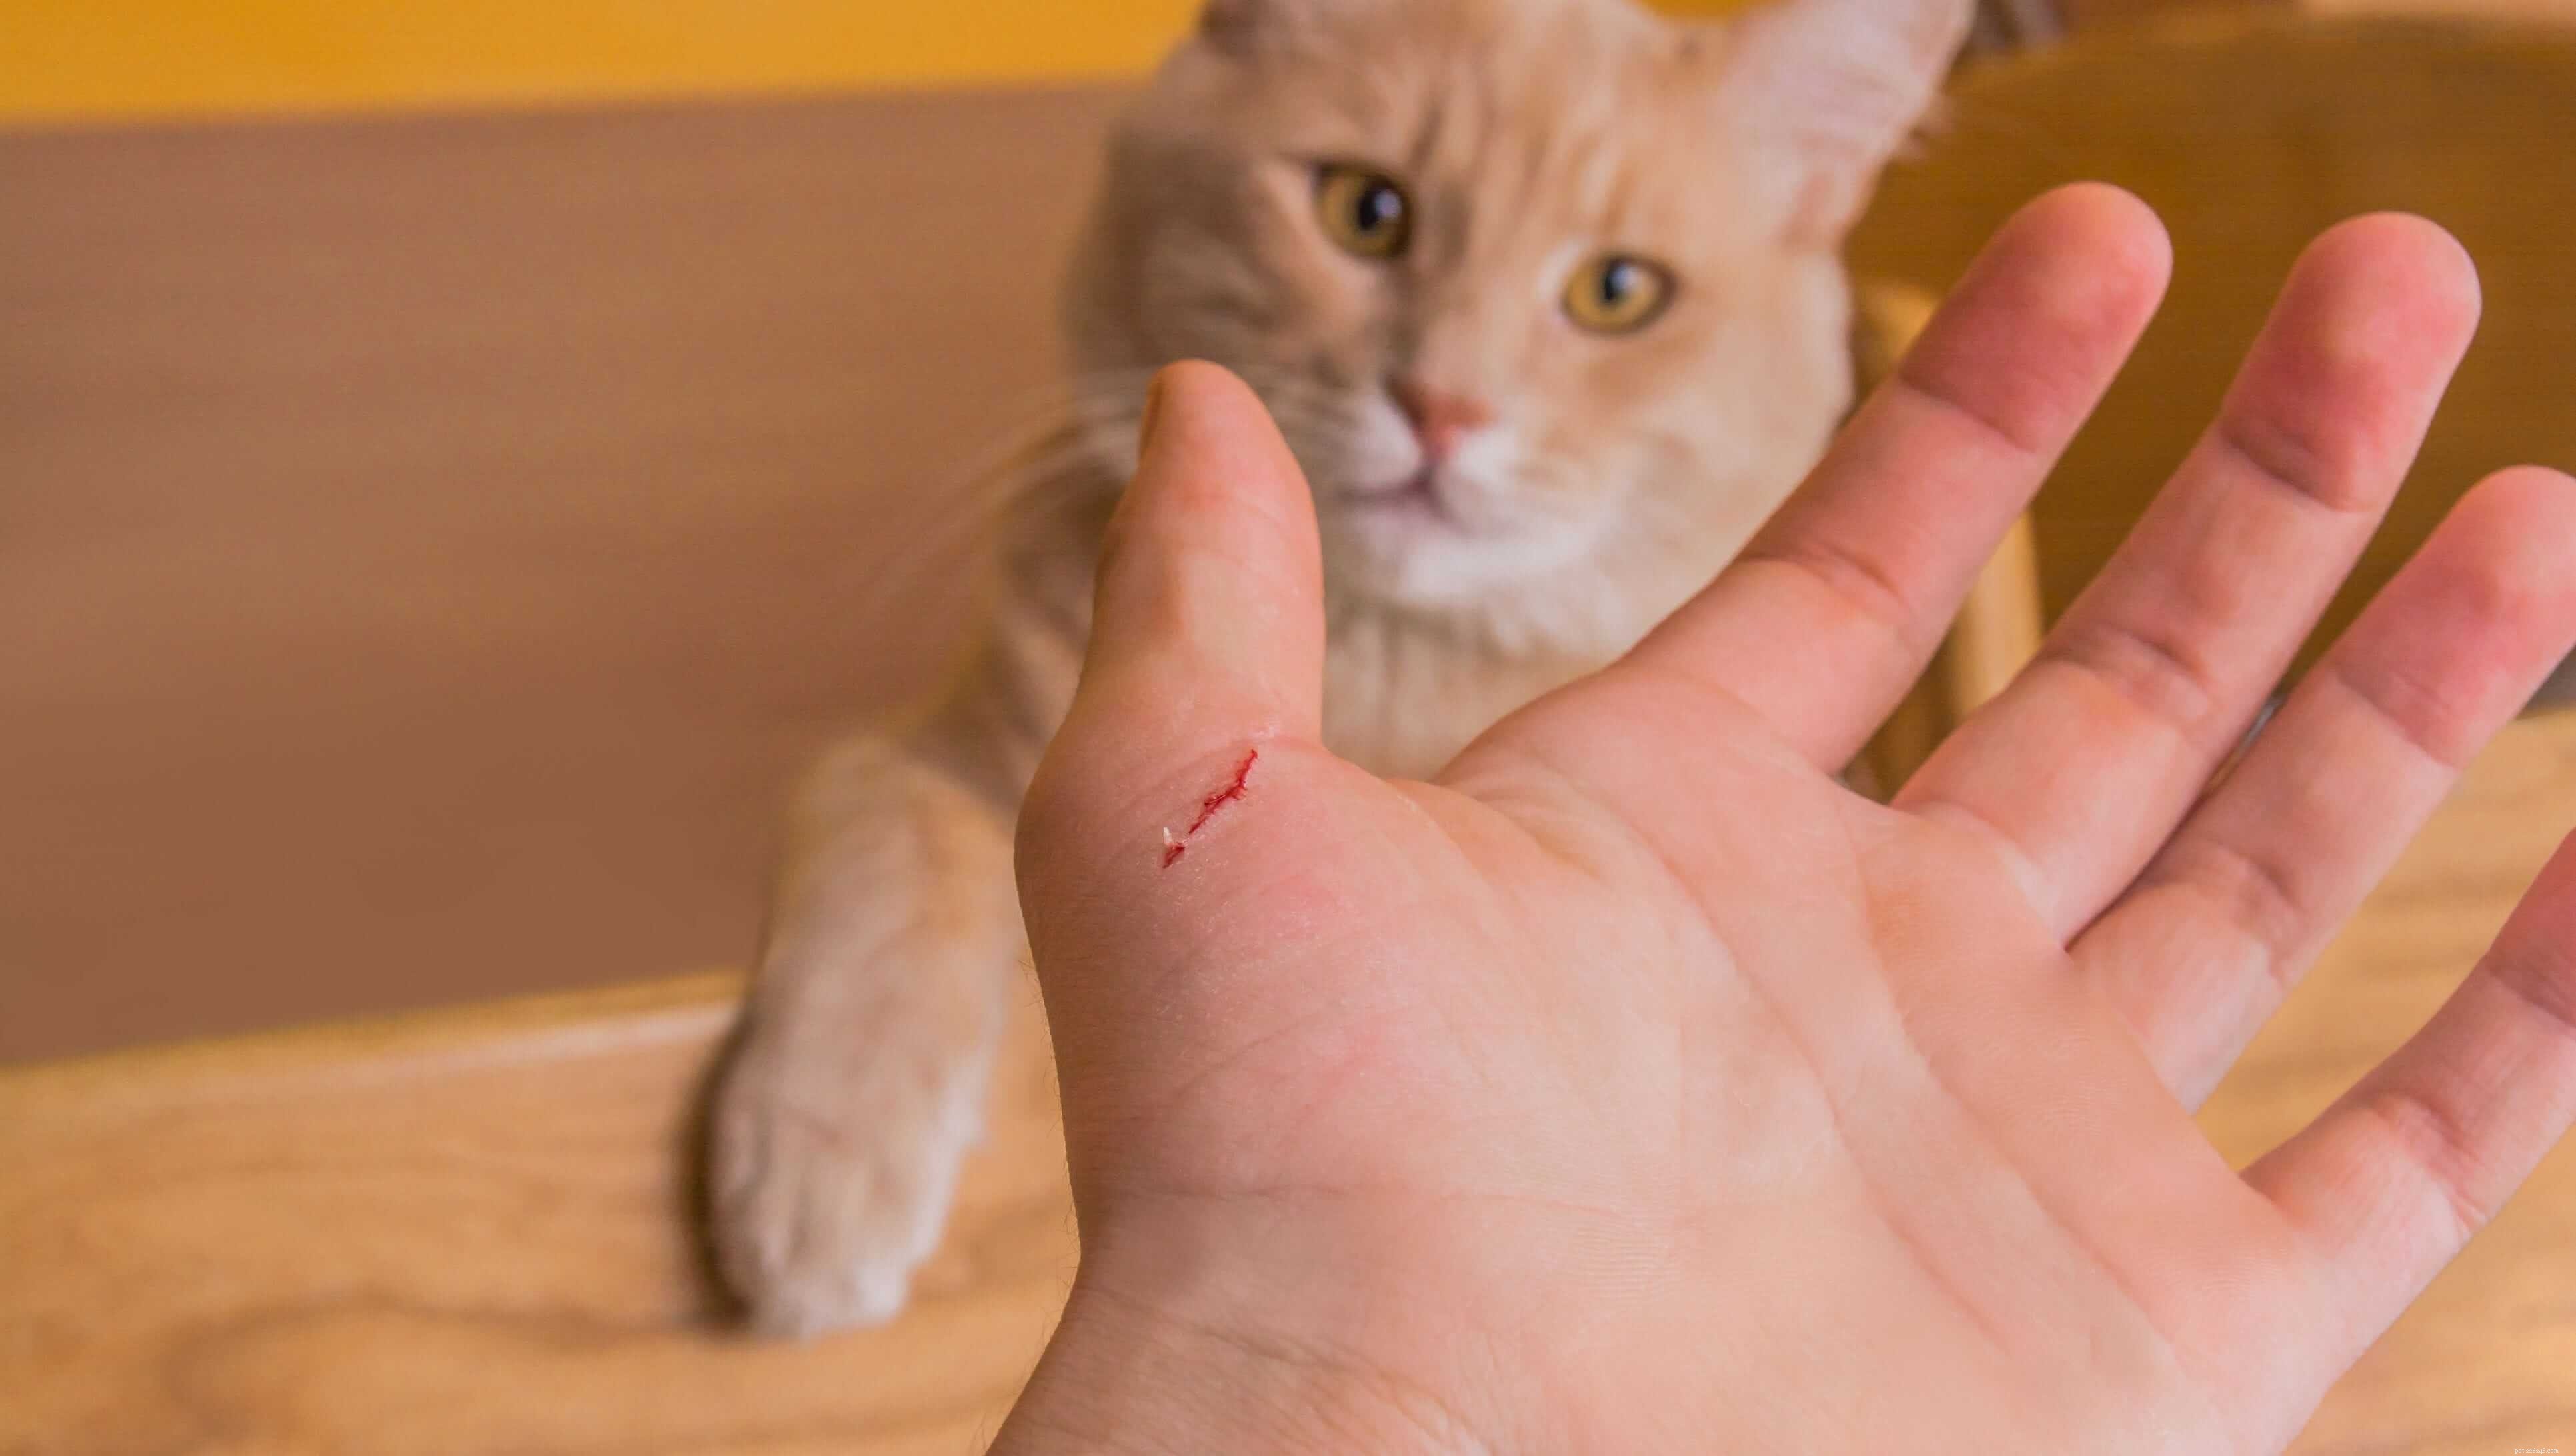 Come gli esseri umani prendono la rabbia da un graffio di gatto?